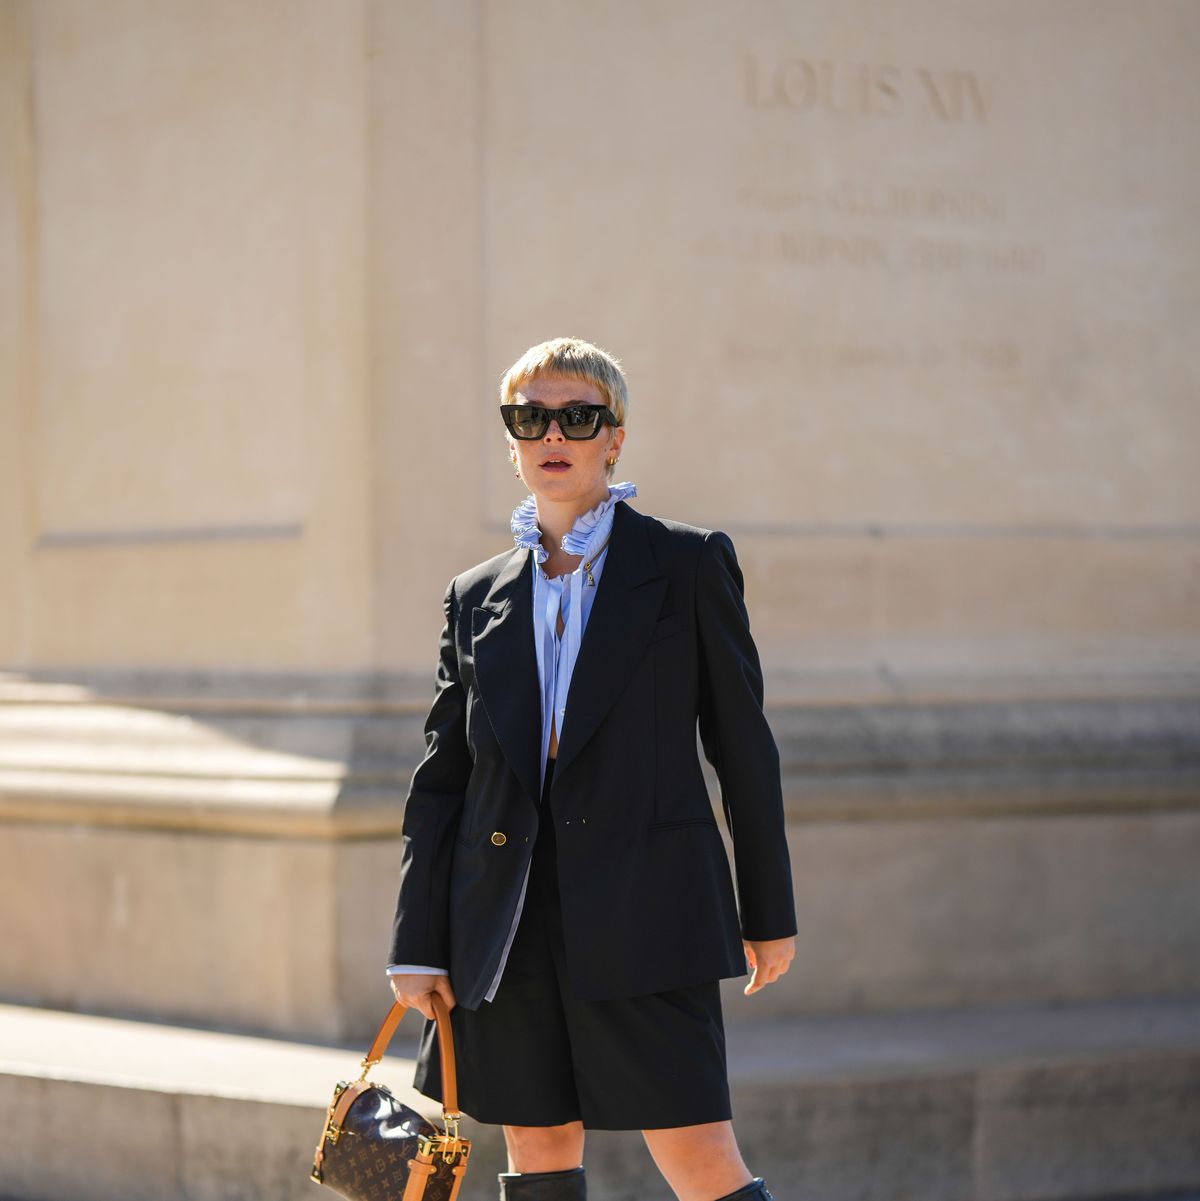 El nuevo bolso de Louis Vuitton GO-14 será el nuevo it-bag del otoño